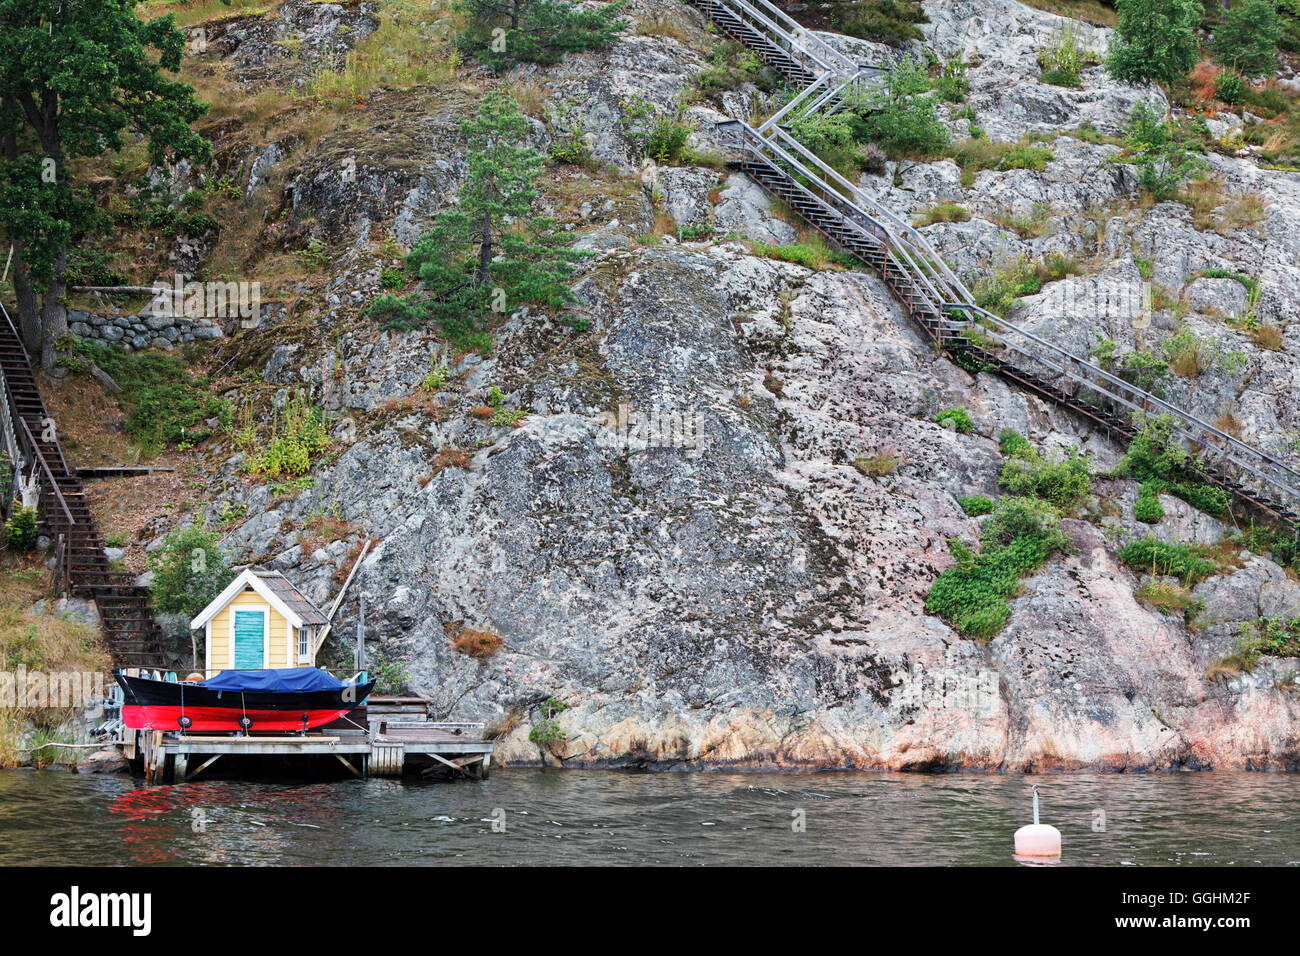 Casa del barco y los pasos que conducen a una casa de vacaciones, Estocolmo, Suecia Foto de stock